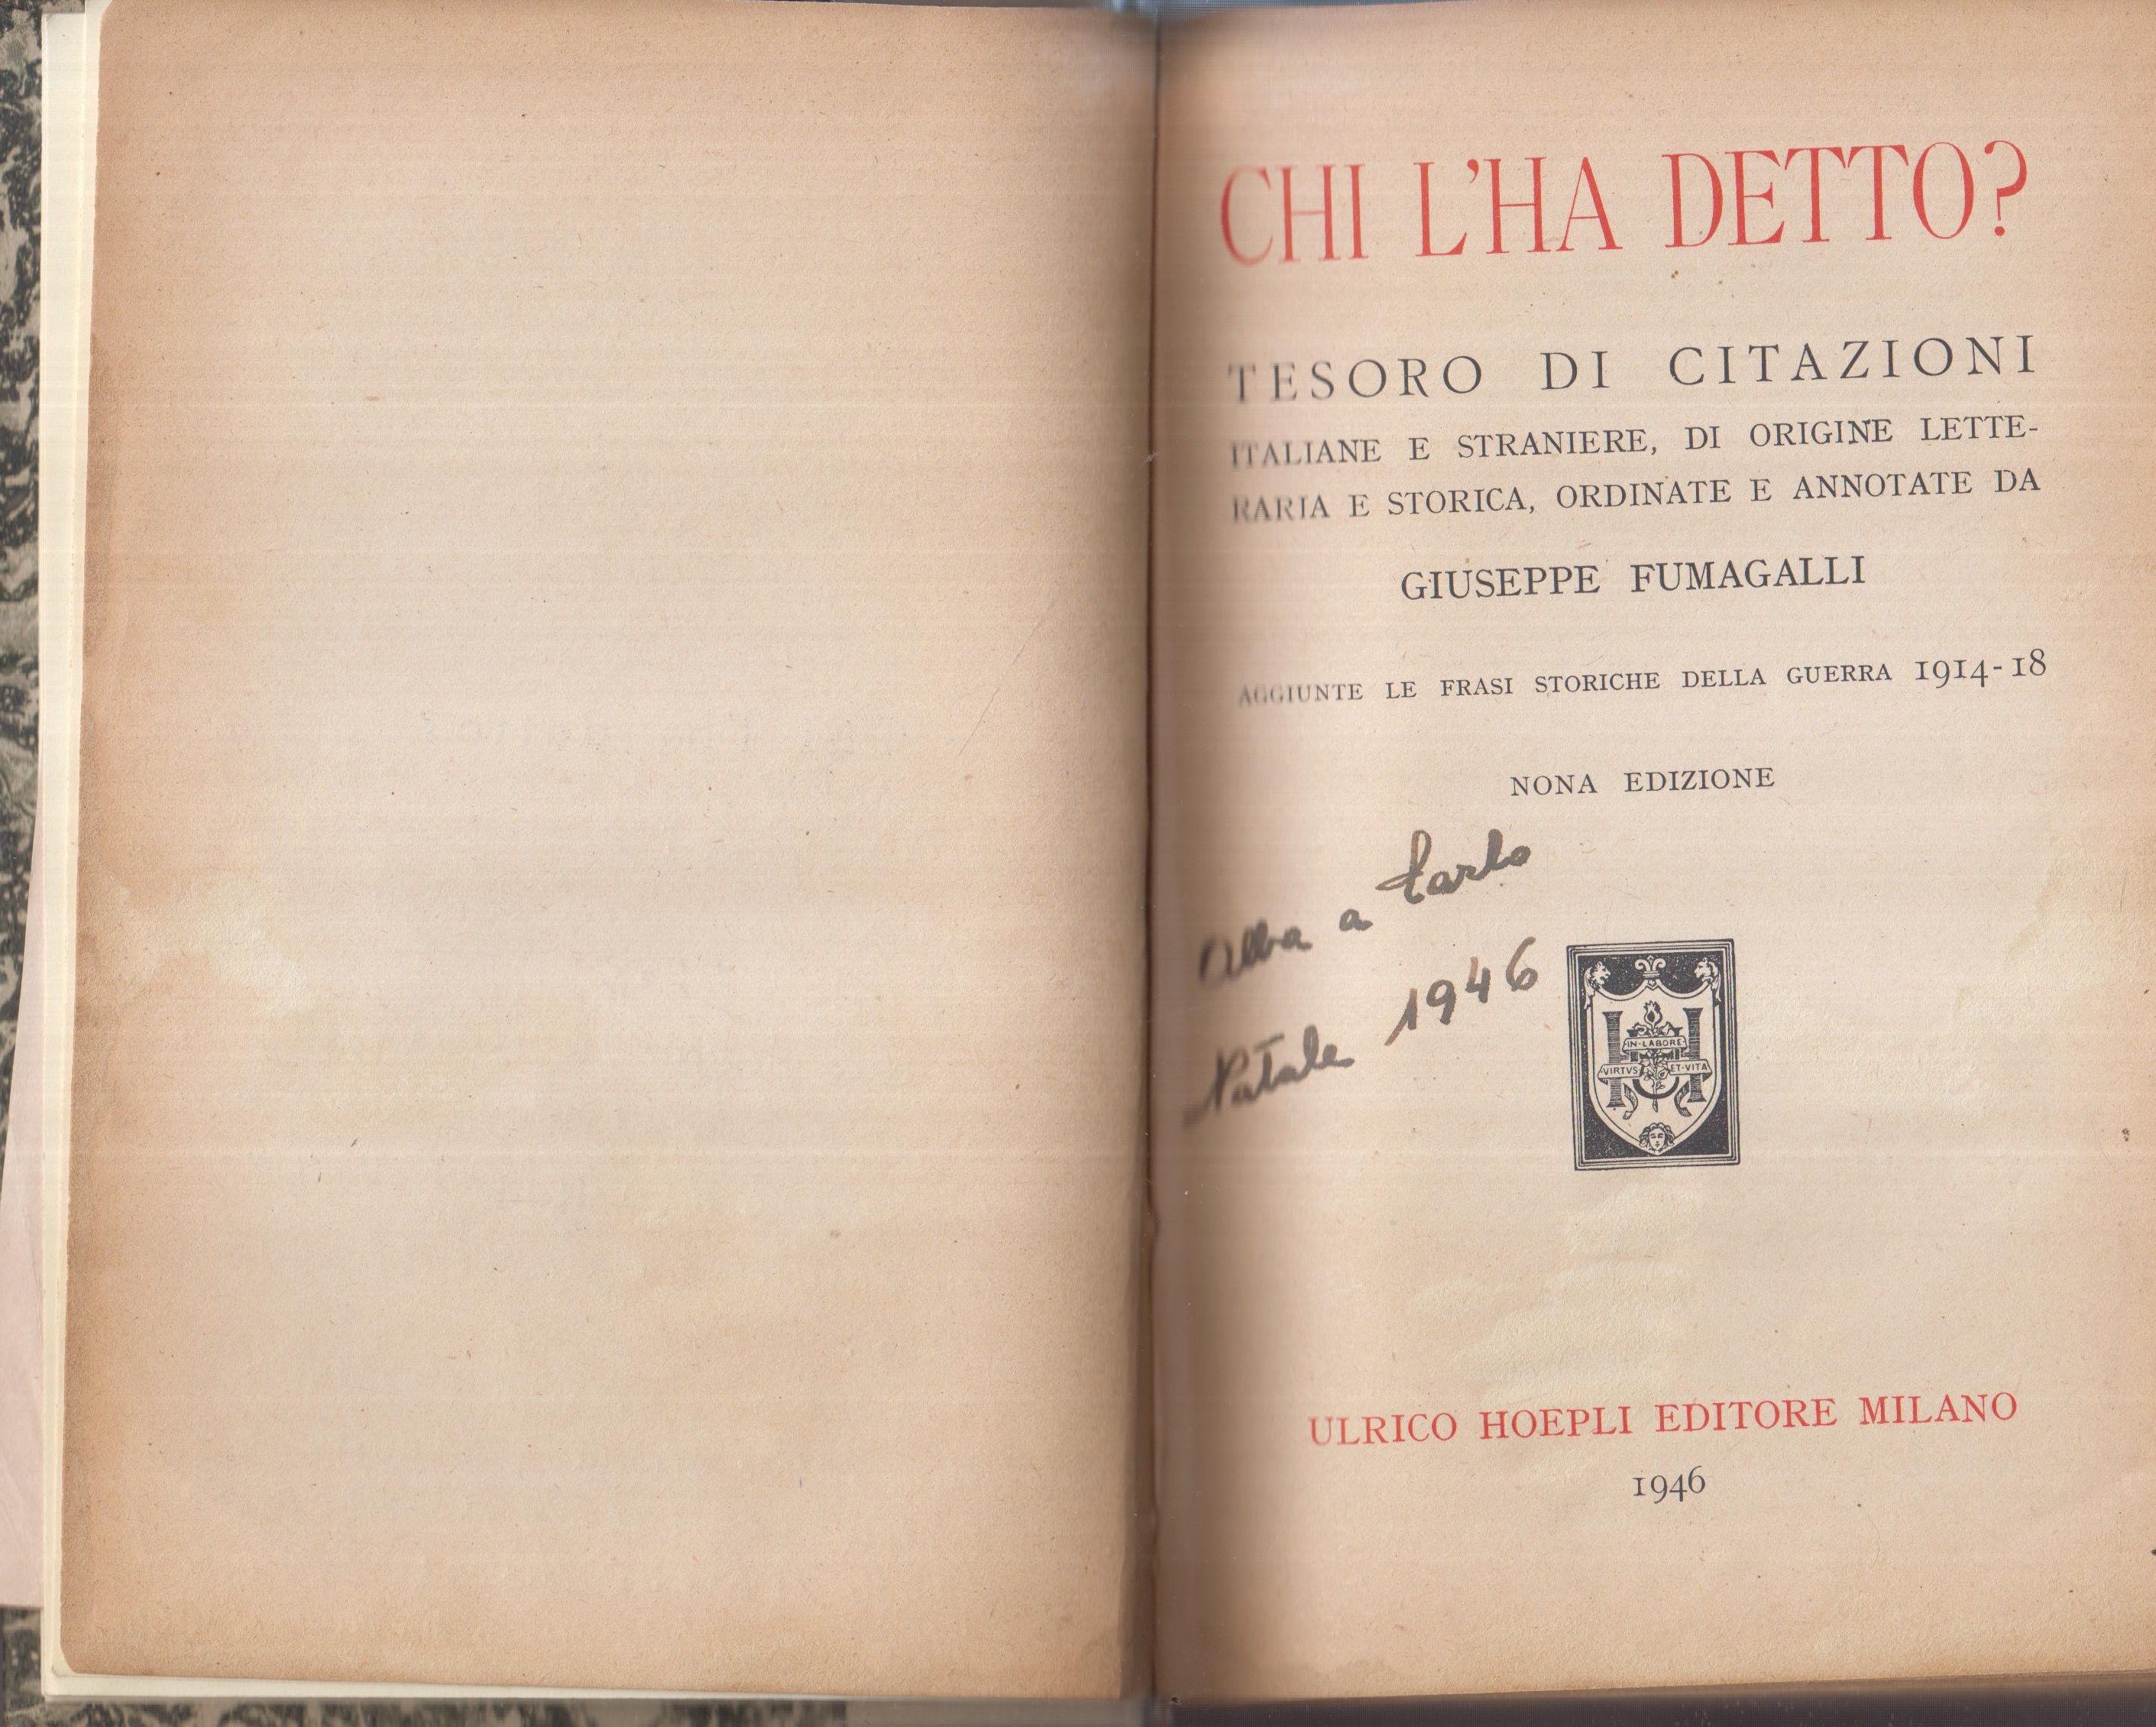 Chi l'ha detto? Tesoro di citazioni italiane e straniere, di origine letteraria e storica, ordinate e annotate da Giuseppe Fumagalli.